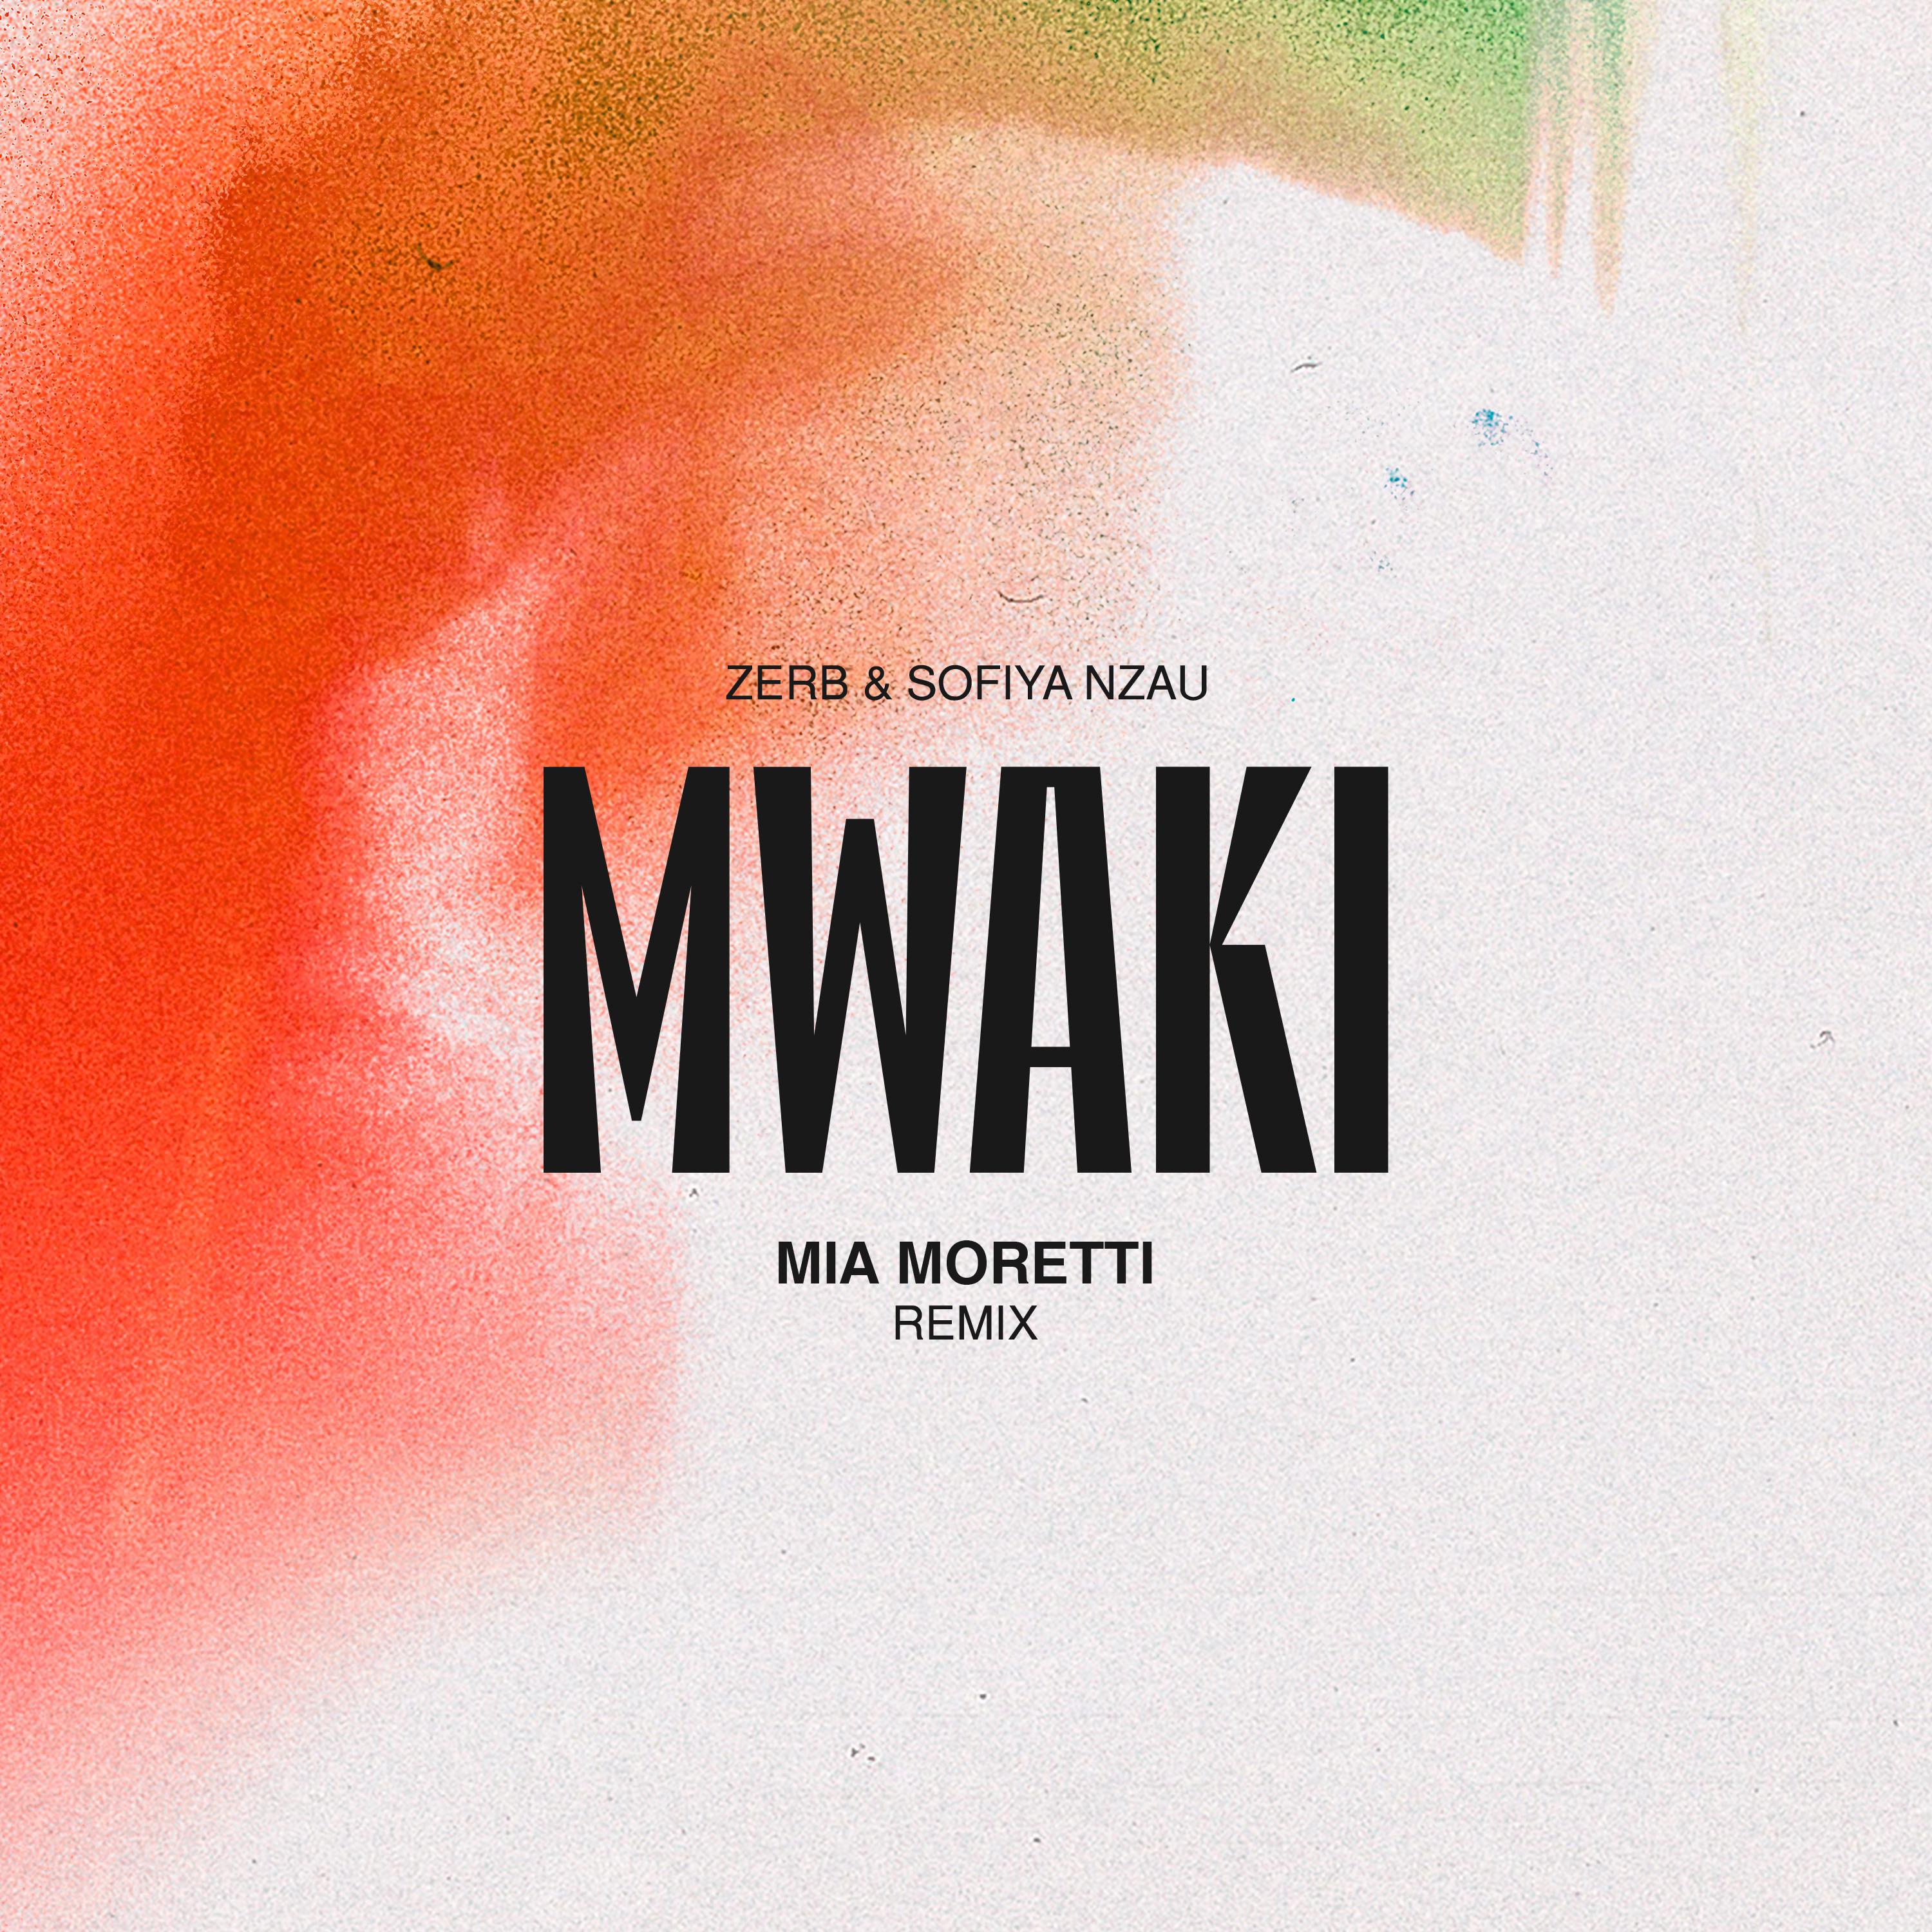 Zerb - Mwaki (Mia Moretti Remix)